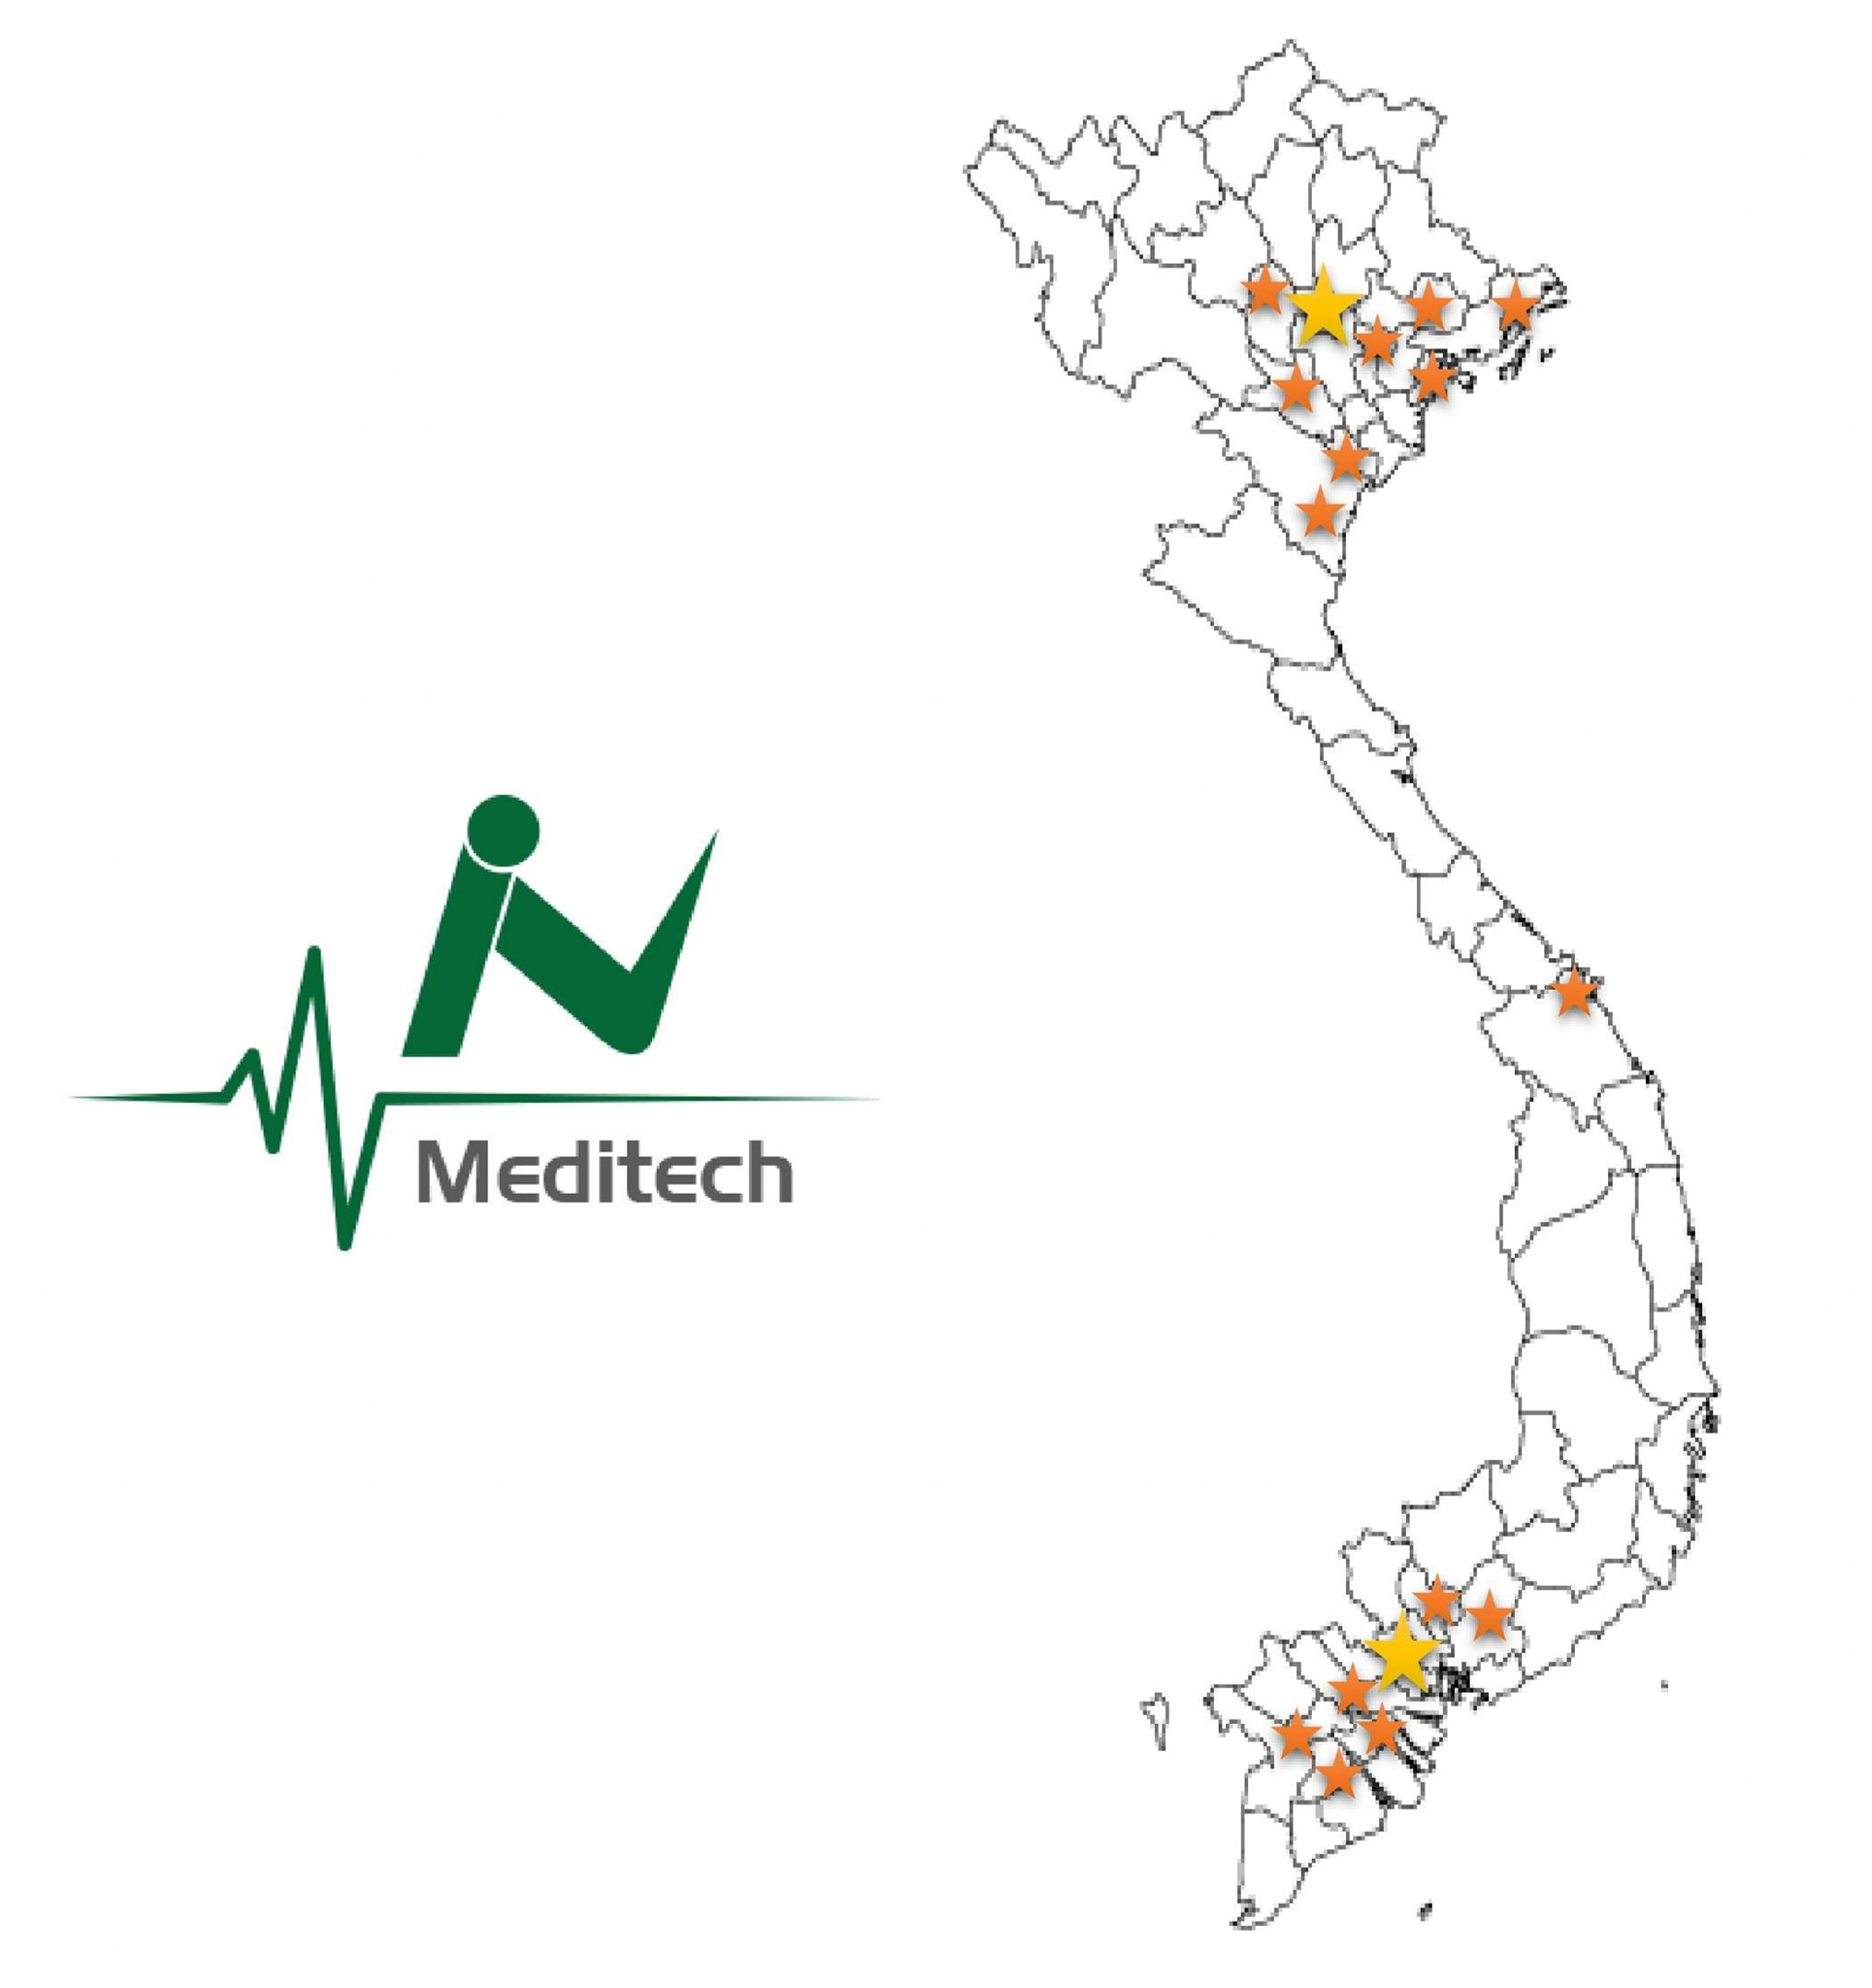 IV Meditech cung cấp trang thiết bị cho những bệnh viện uy tín nhất.